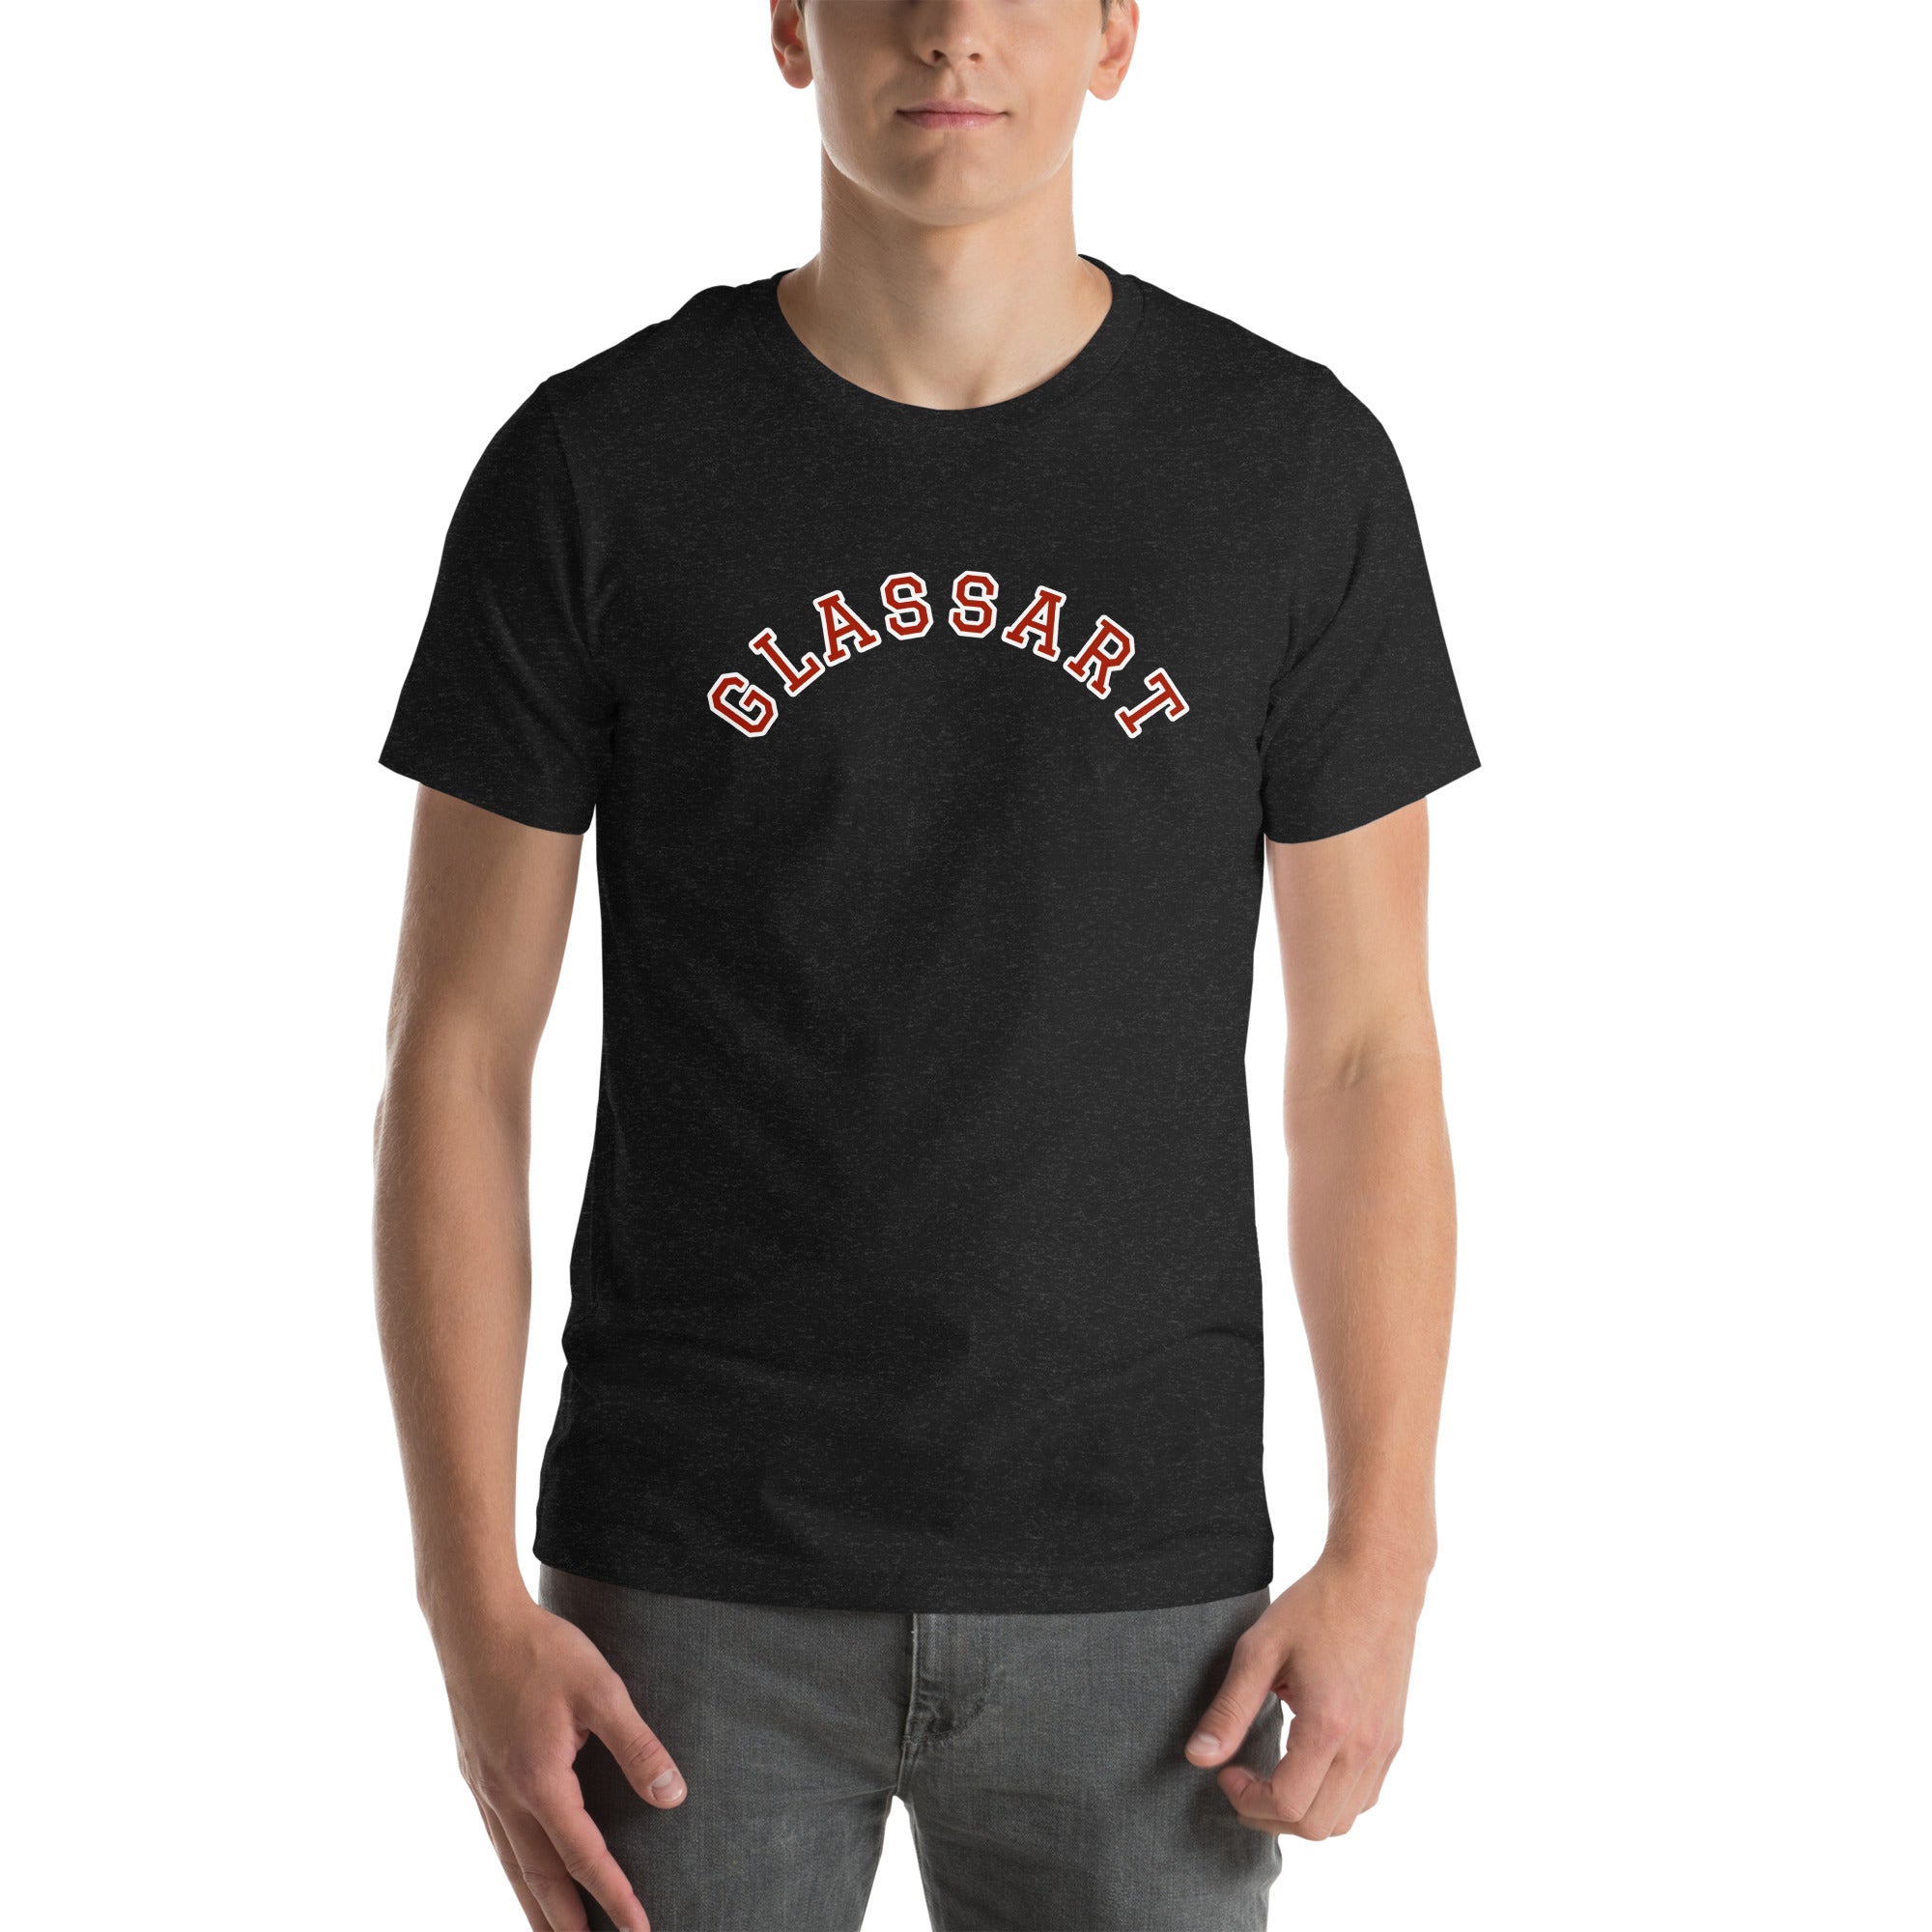 Unisex GLASSART t-shirt